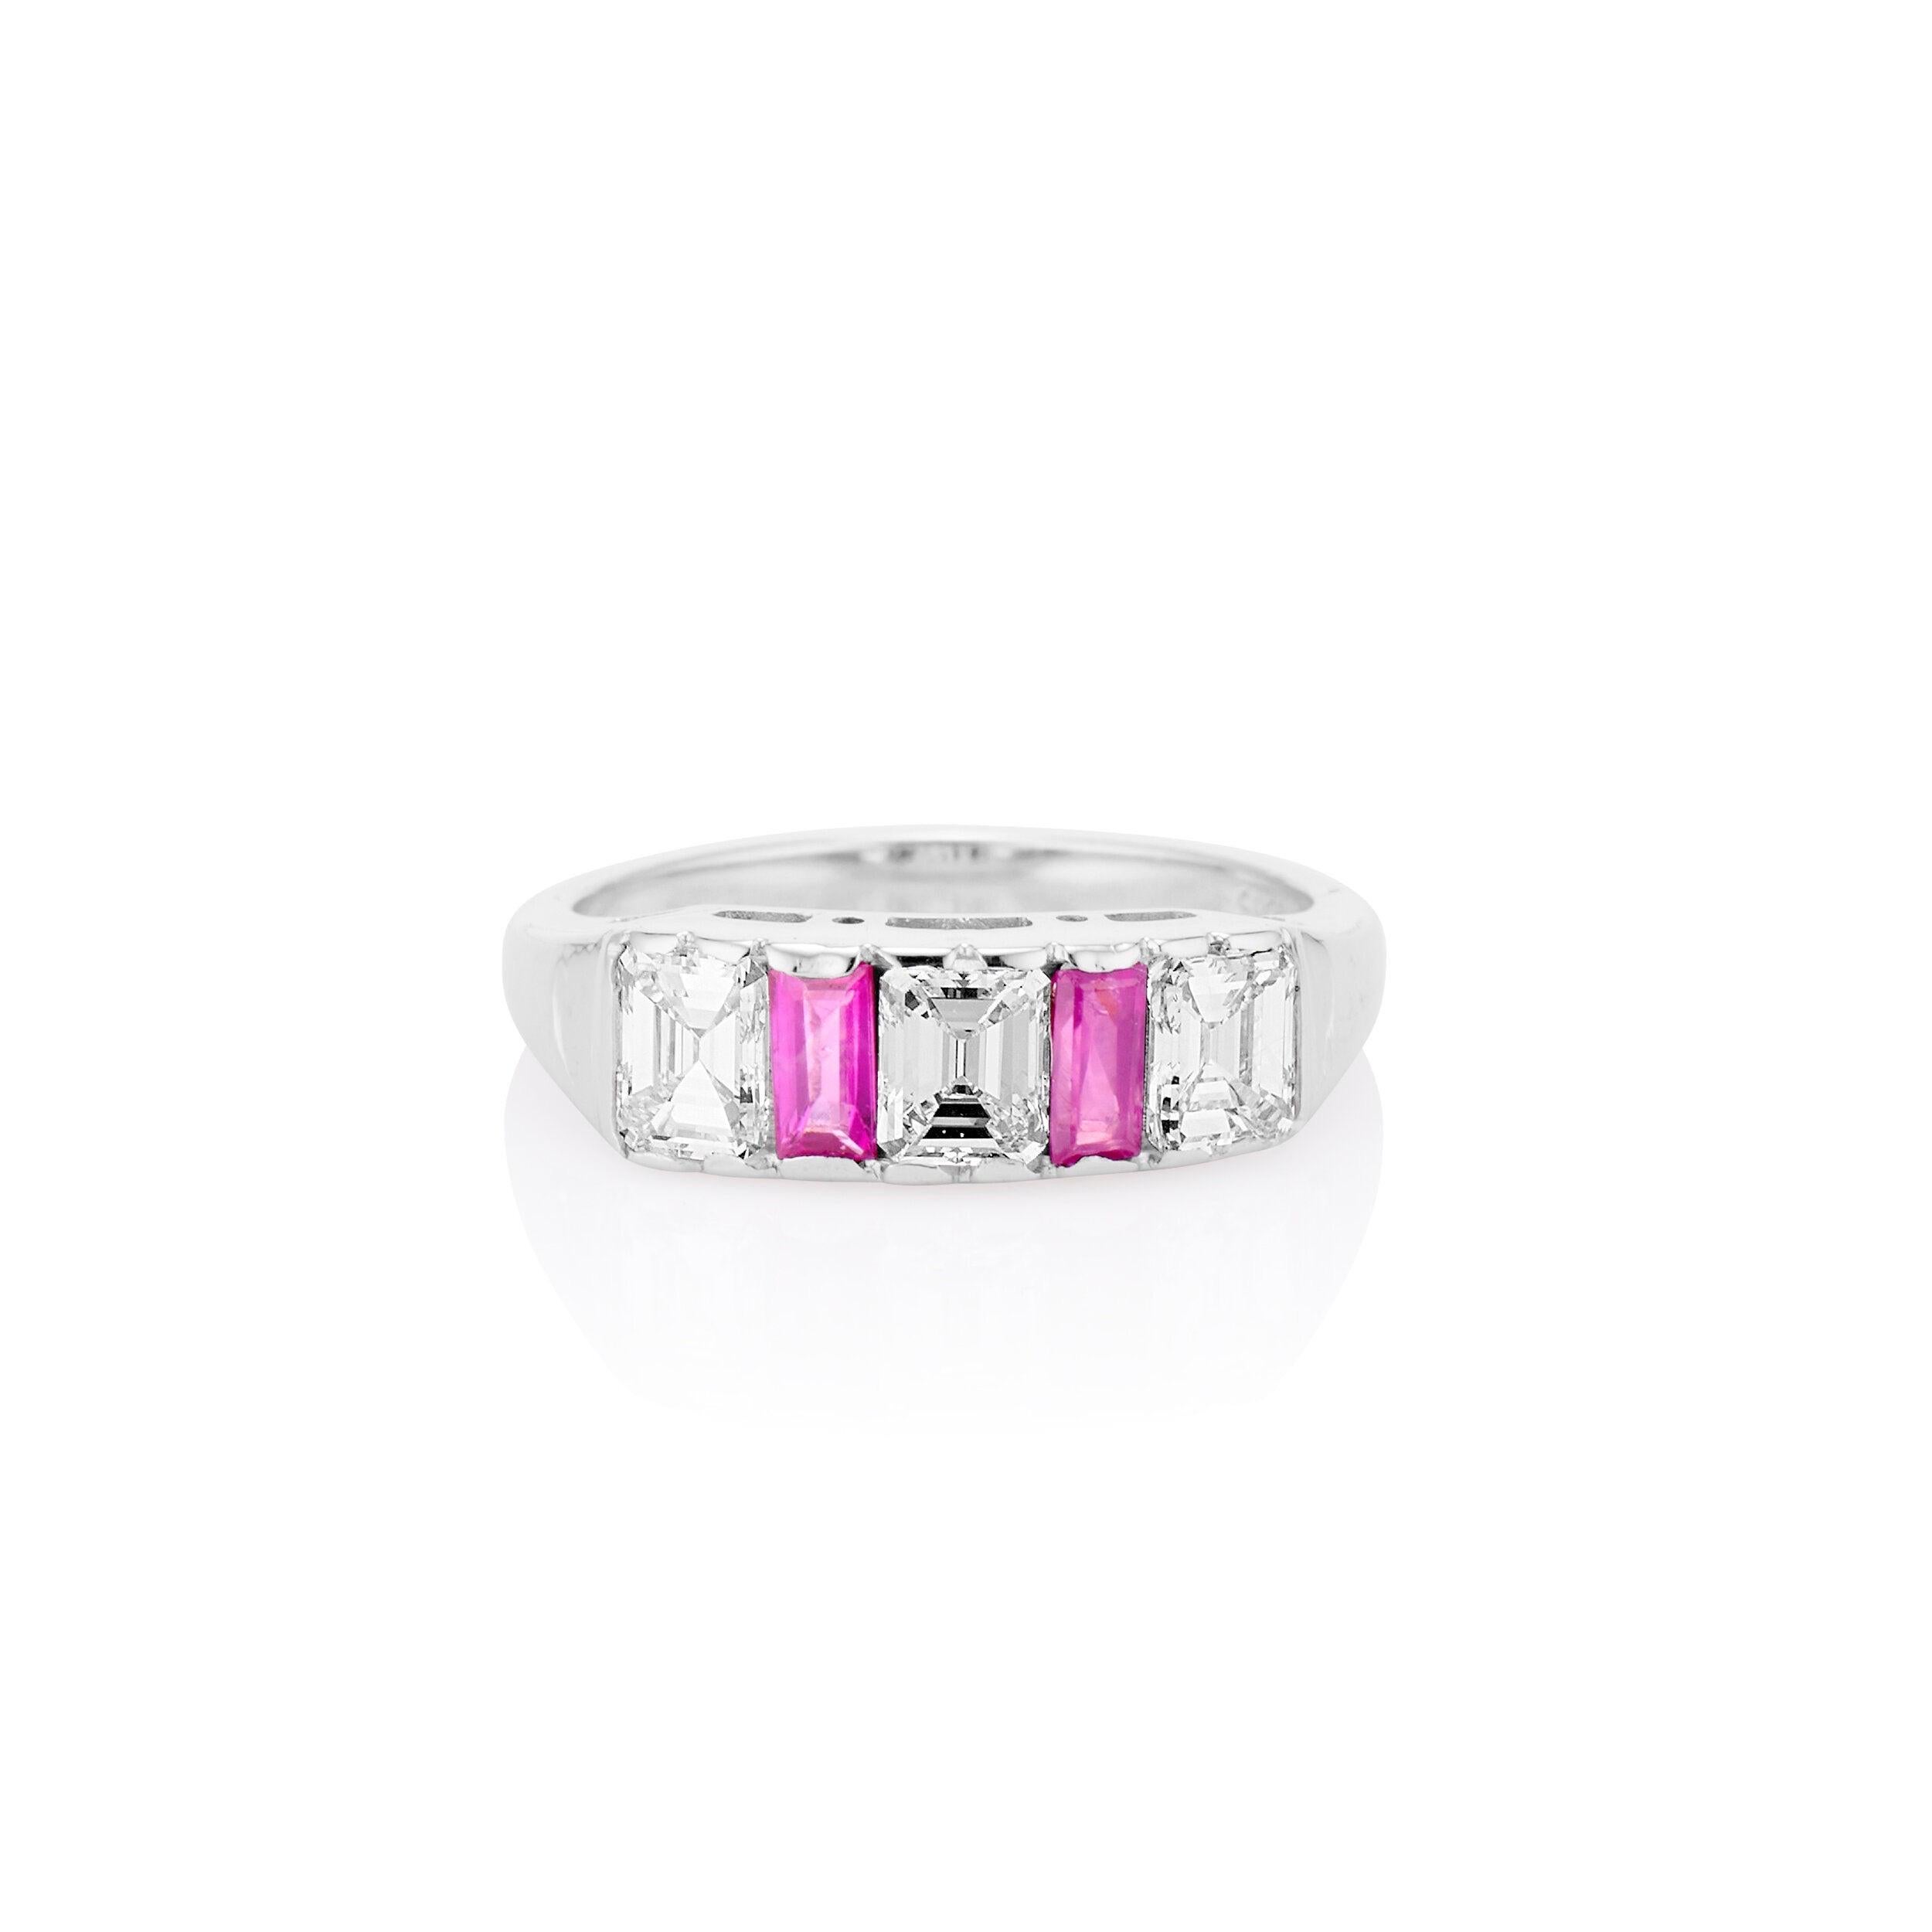 Dieser elegante und stapelbare Ring von HWBT & Sons aus den 1950er Jahren hebt drei nahtlos gefasste, strahlend weiße Diamanten im Smaragdschliff hervor, die von lebhaften natürlichen Rubinen umgeben sind. Dieser Ring aus 14-karätigem Weißgold hat